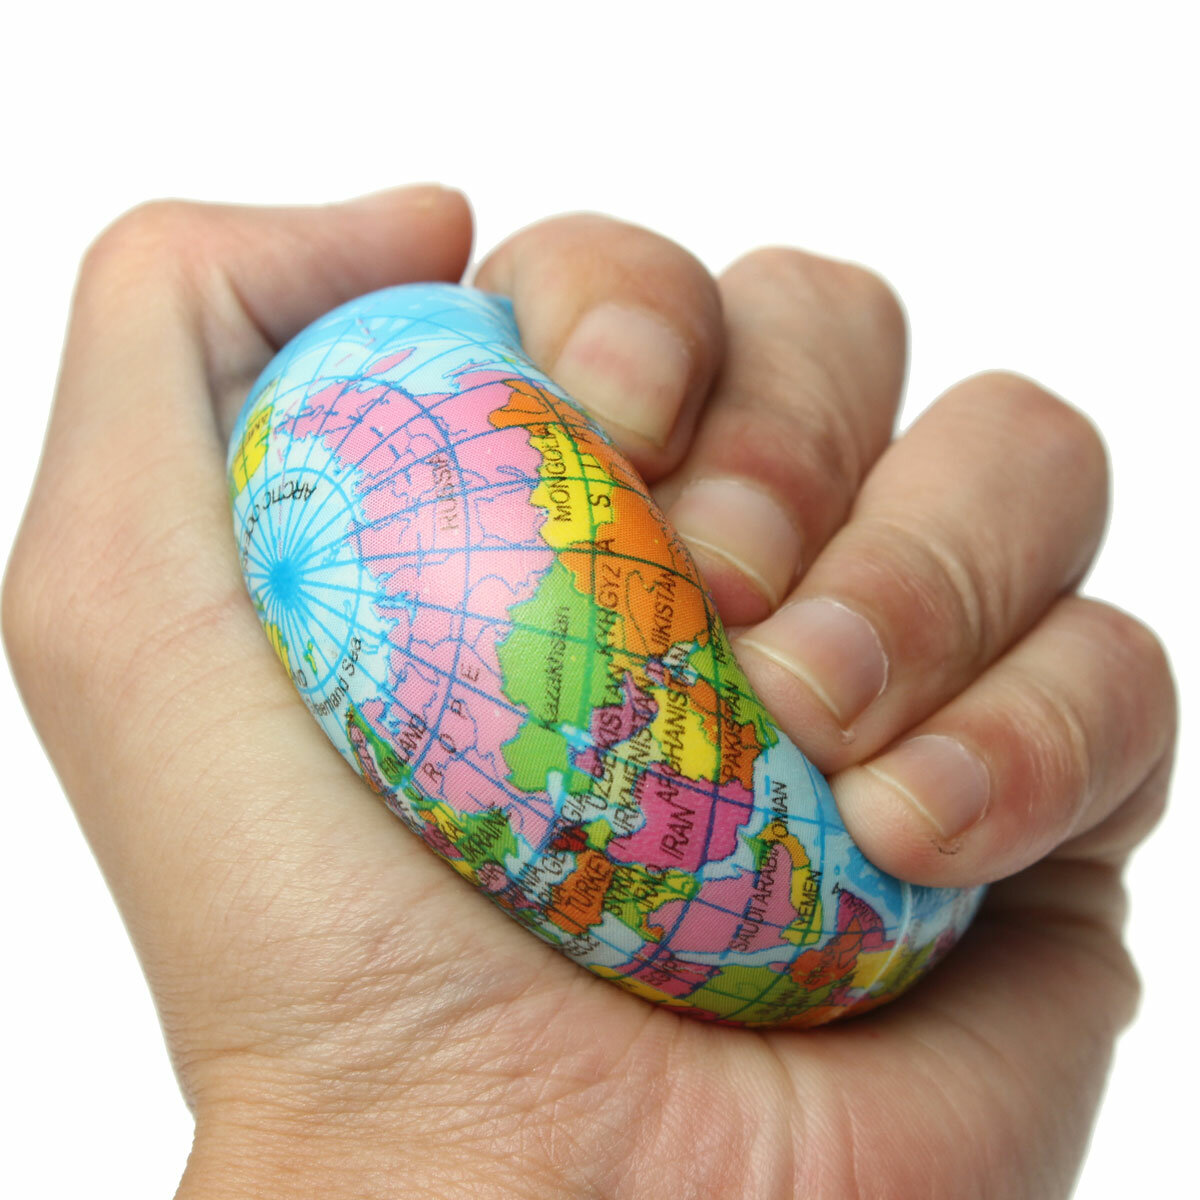 

Глобус земля планета карта мира пена для снятия стресса упругий пресс география мяч игрушка